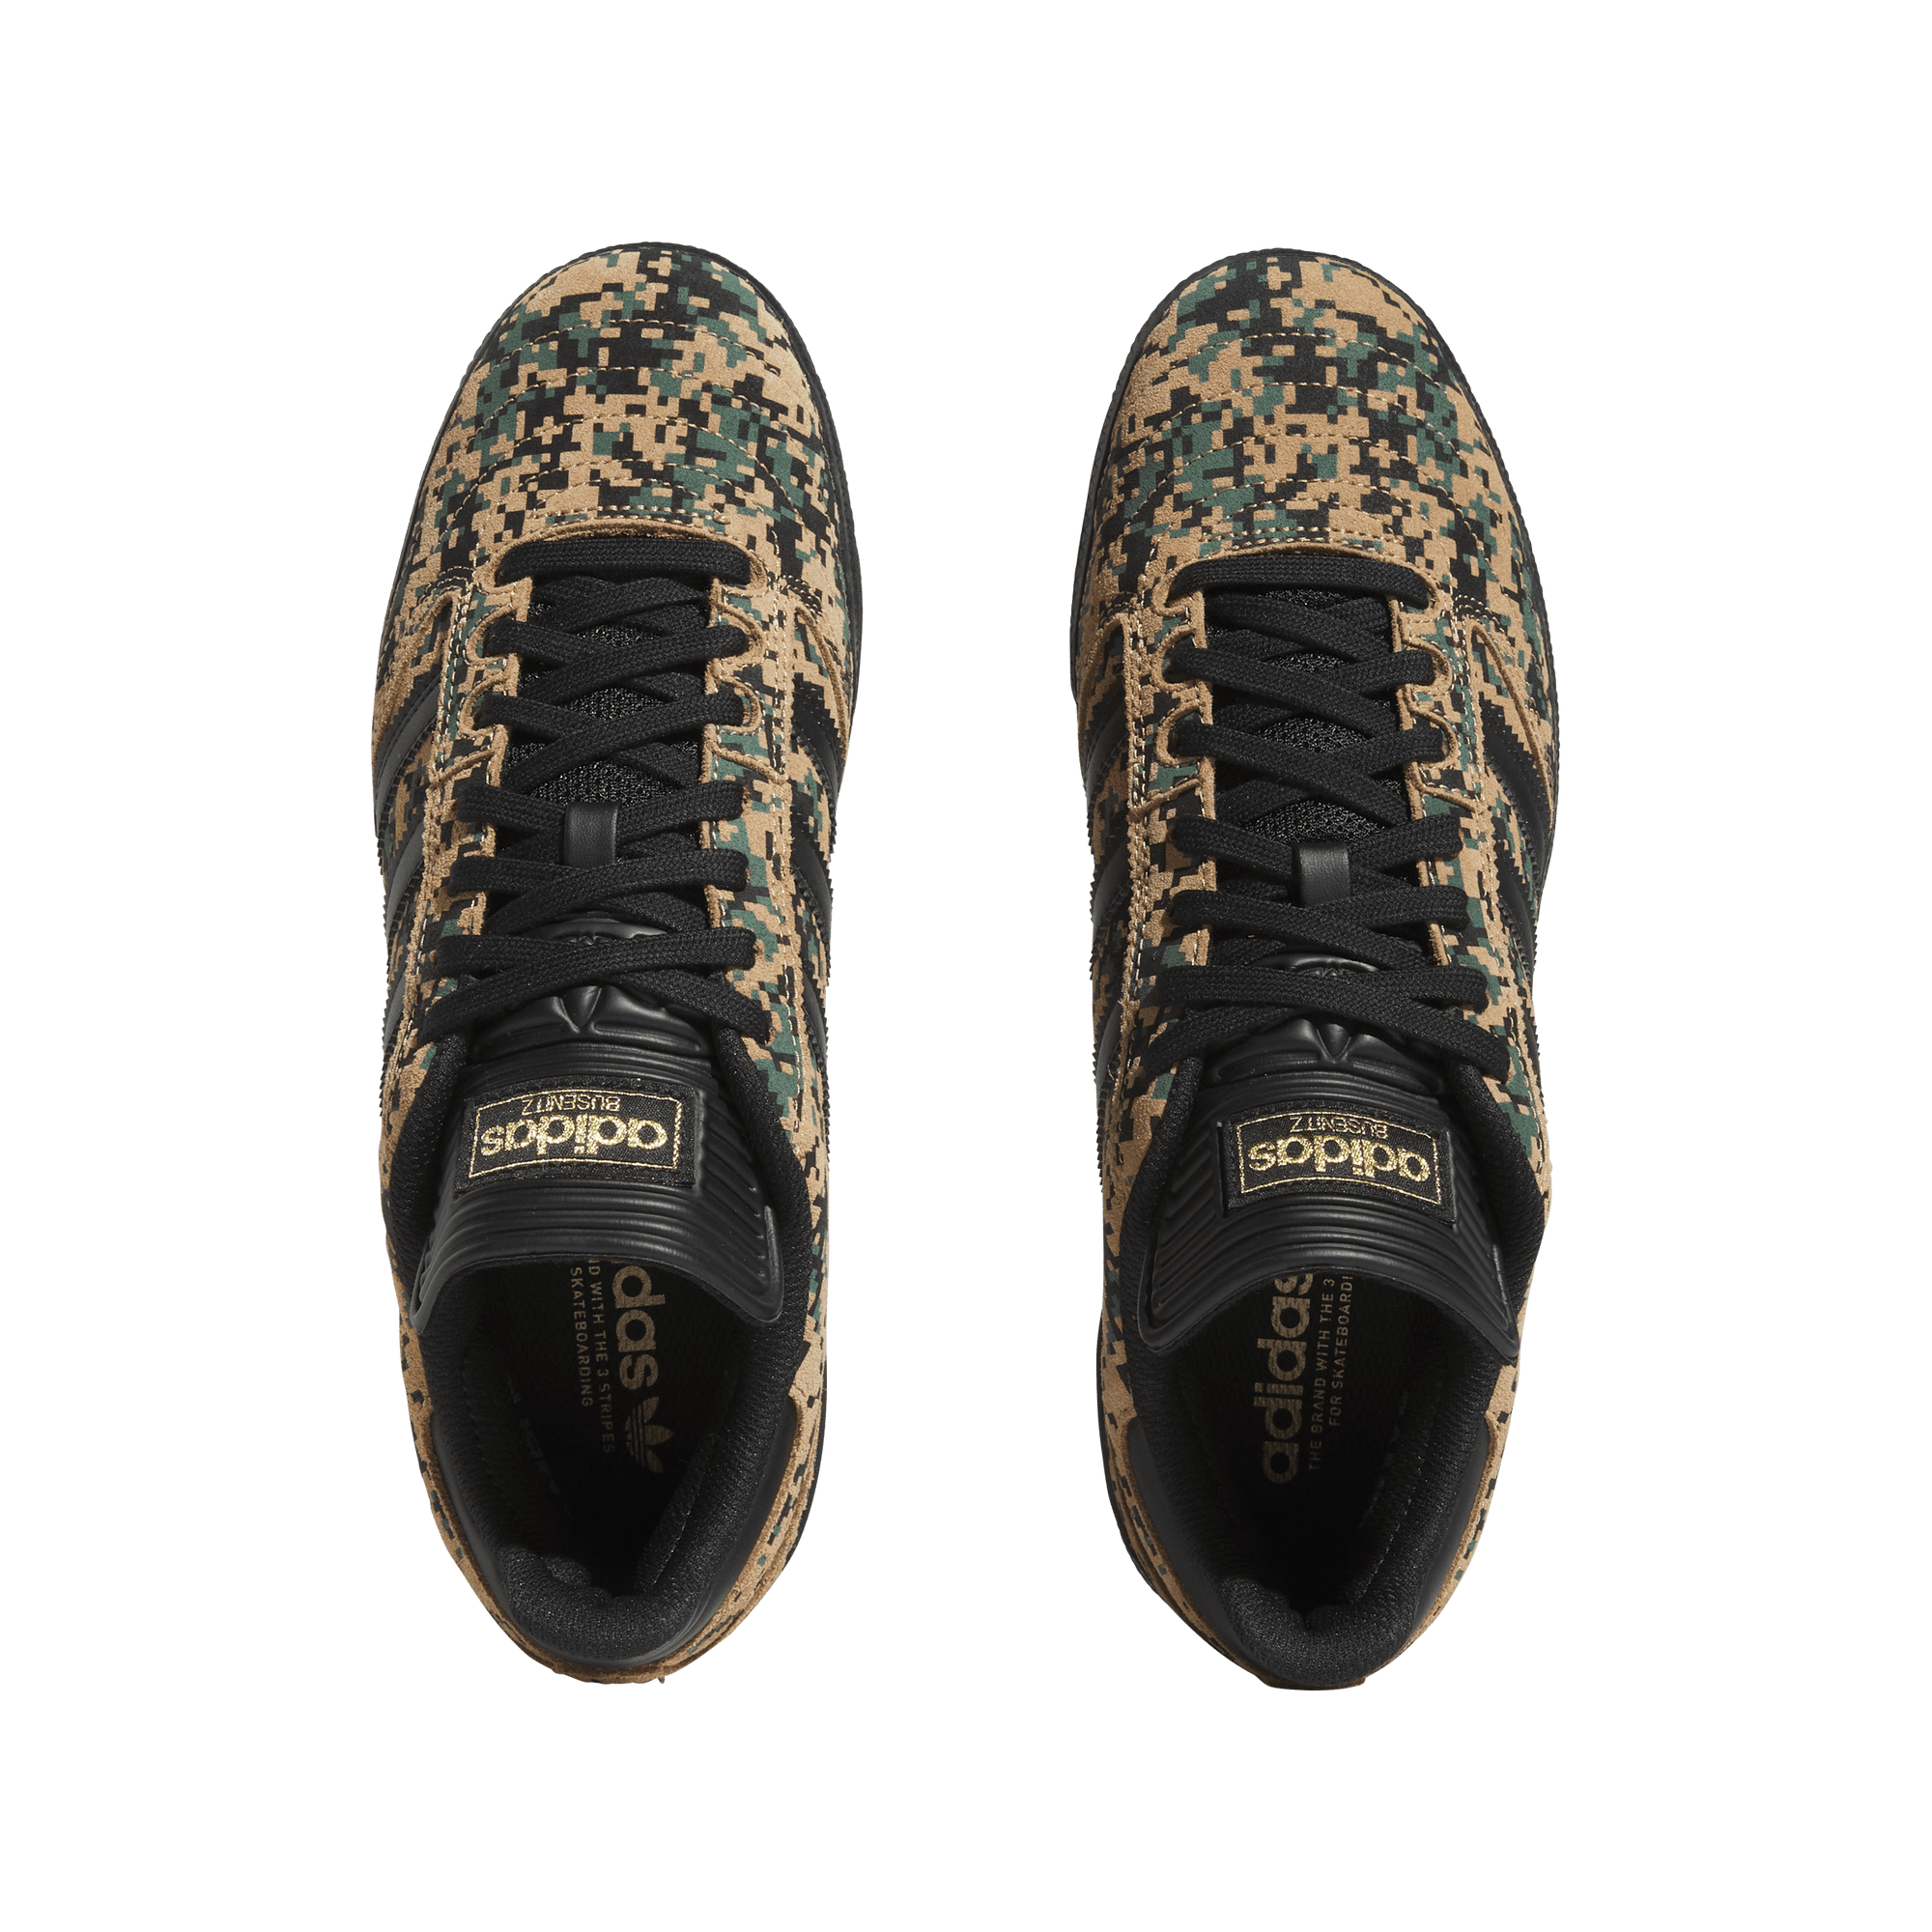 ADIDAS Busenitz Shoes Core Black/Cardboard/Gold Metallic Men's Skate Shoes Adidas 